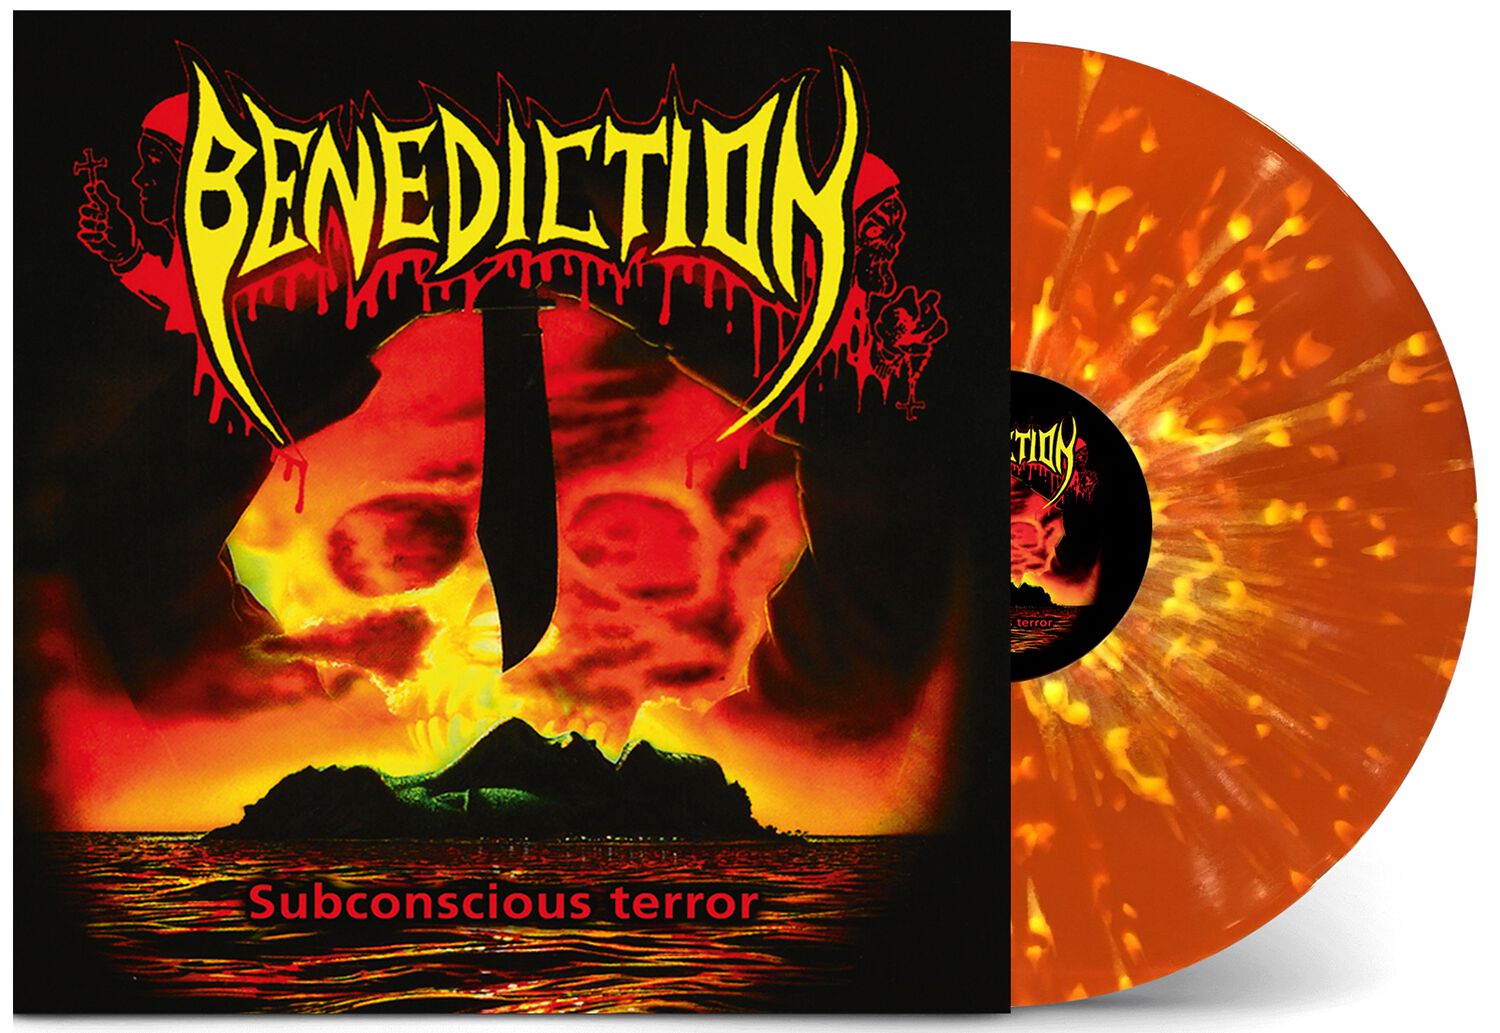 Benediction Subconscious terror LP farbig